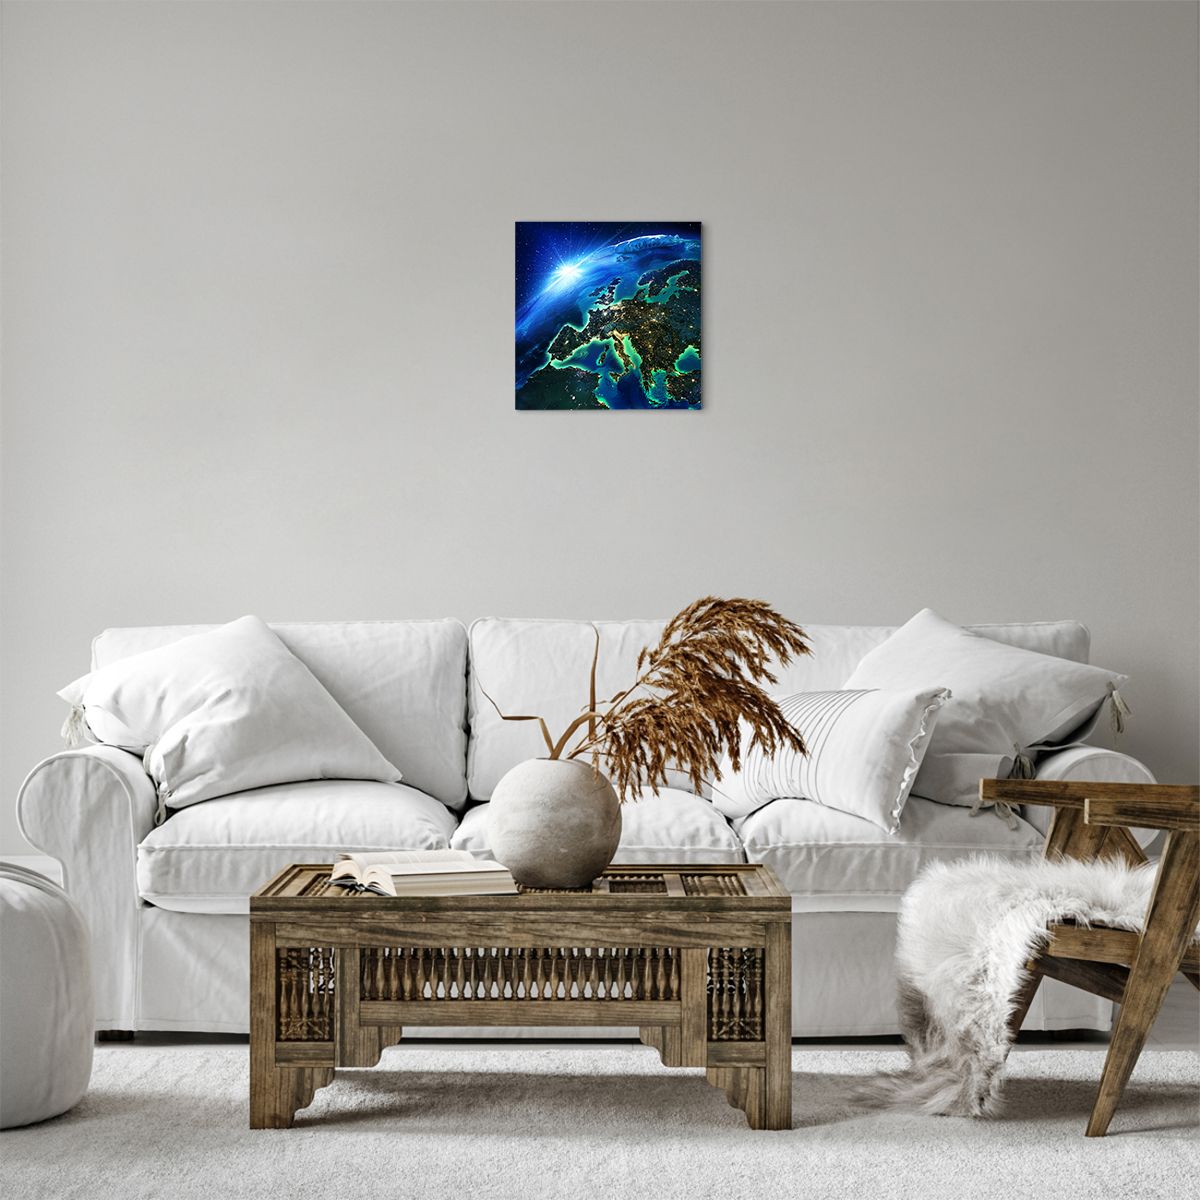 Impression sur toile Cosmos, Impression sur toile Planète Terre, Impression sur toile Continents, Impression sur toile Soleil, Impression sur toile 3D